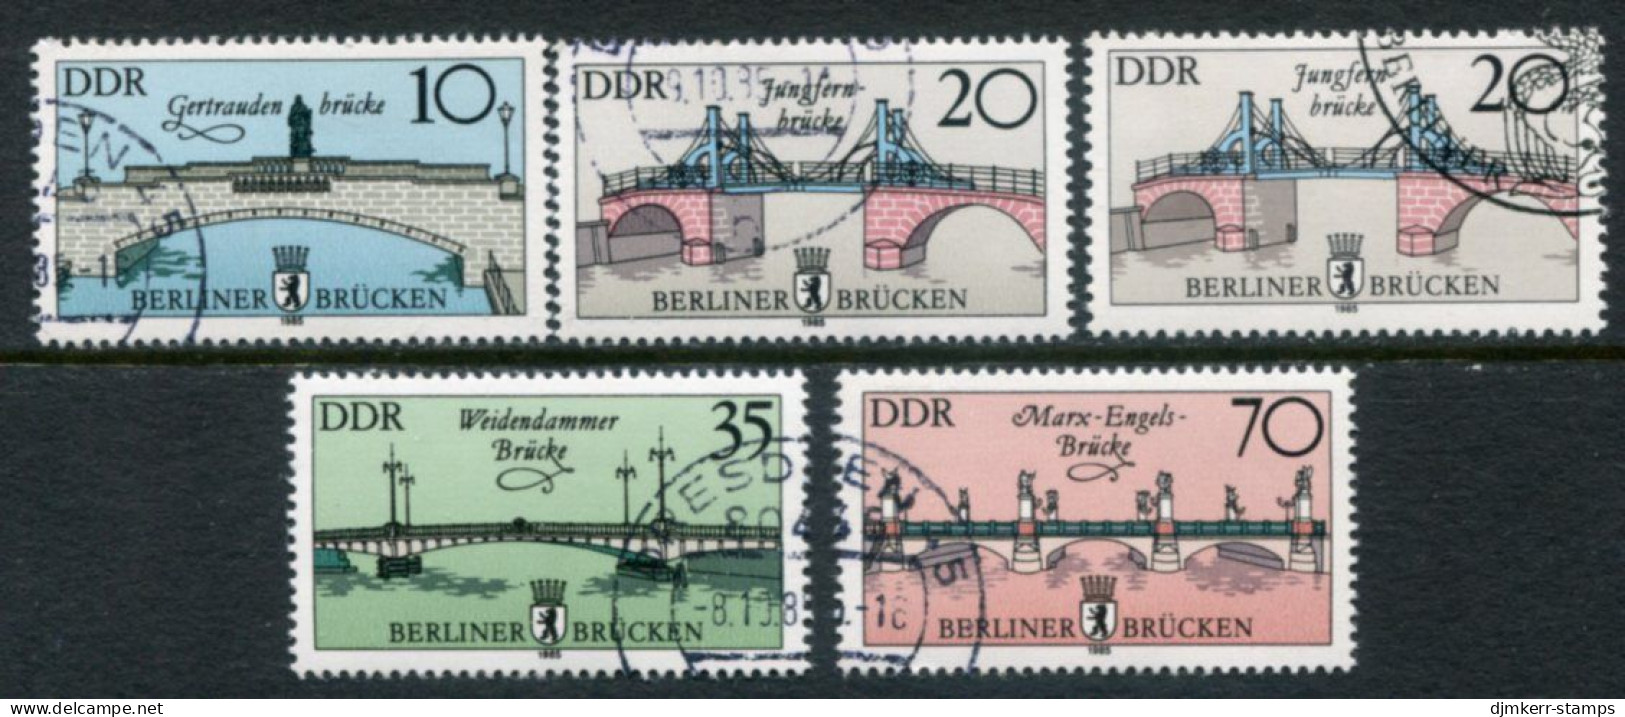 DDR 1985 Berlin Bridges With Both 20 Pf. Used.  Michel 2972-75 - Gebraucht